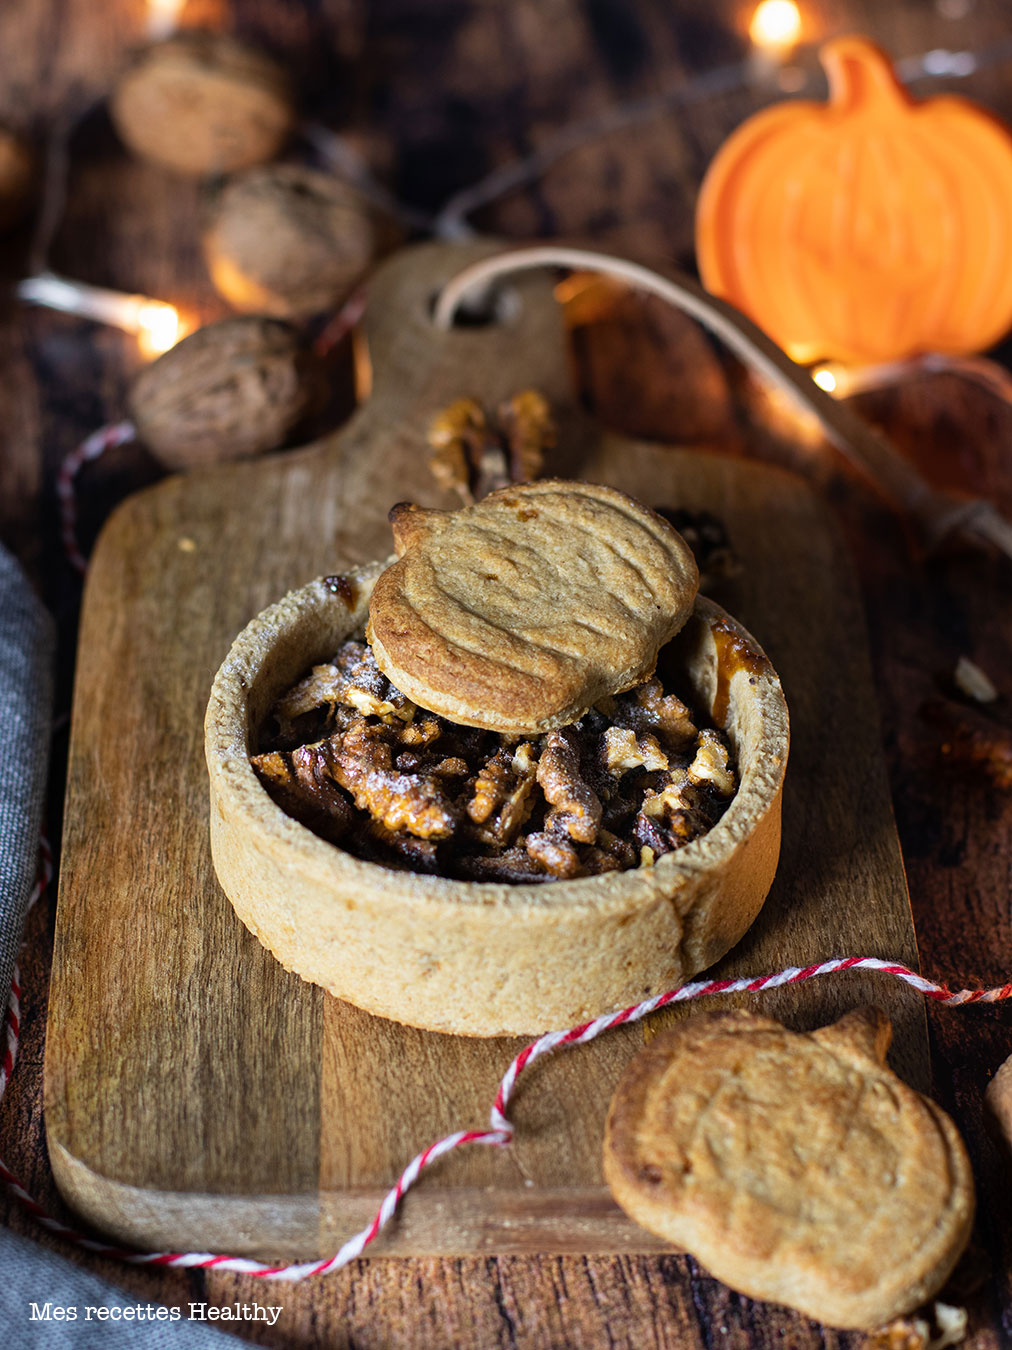 recette healthy-tartelette aux noix-tarte aux noix-caramel-halloween-biscuit sablé-sans beurre